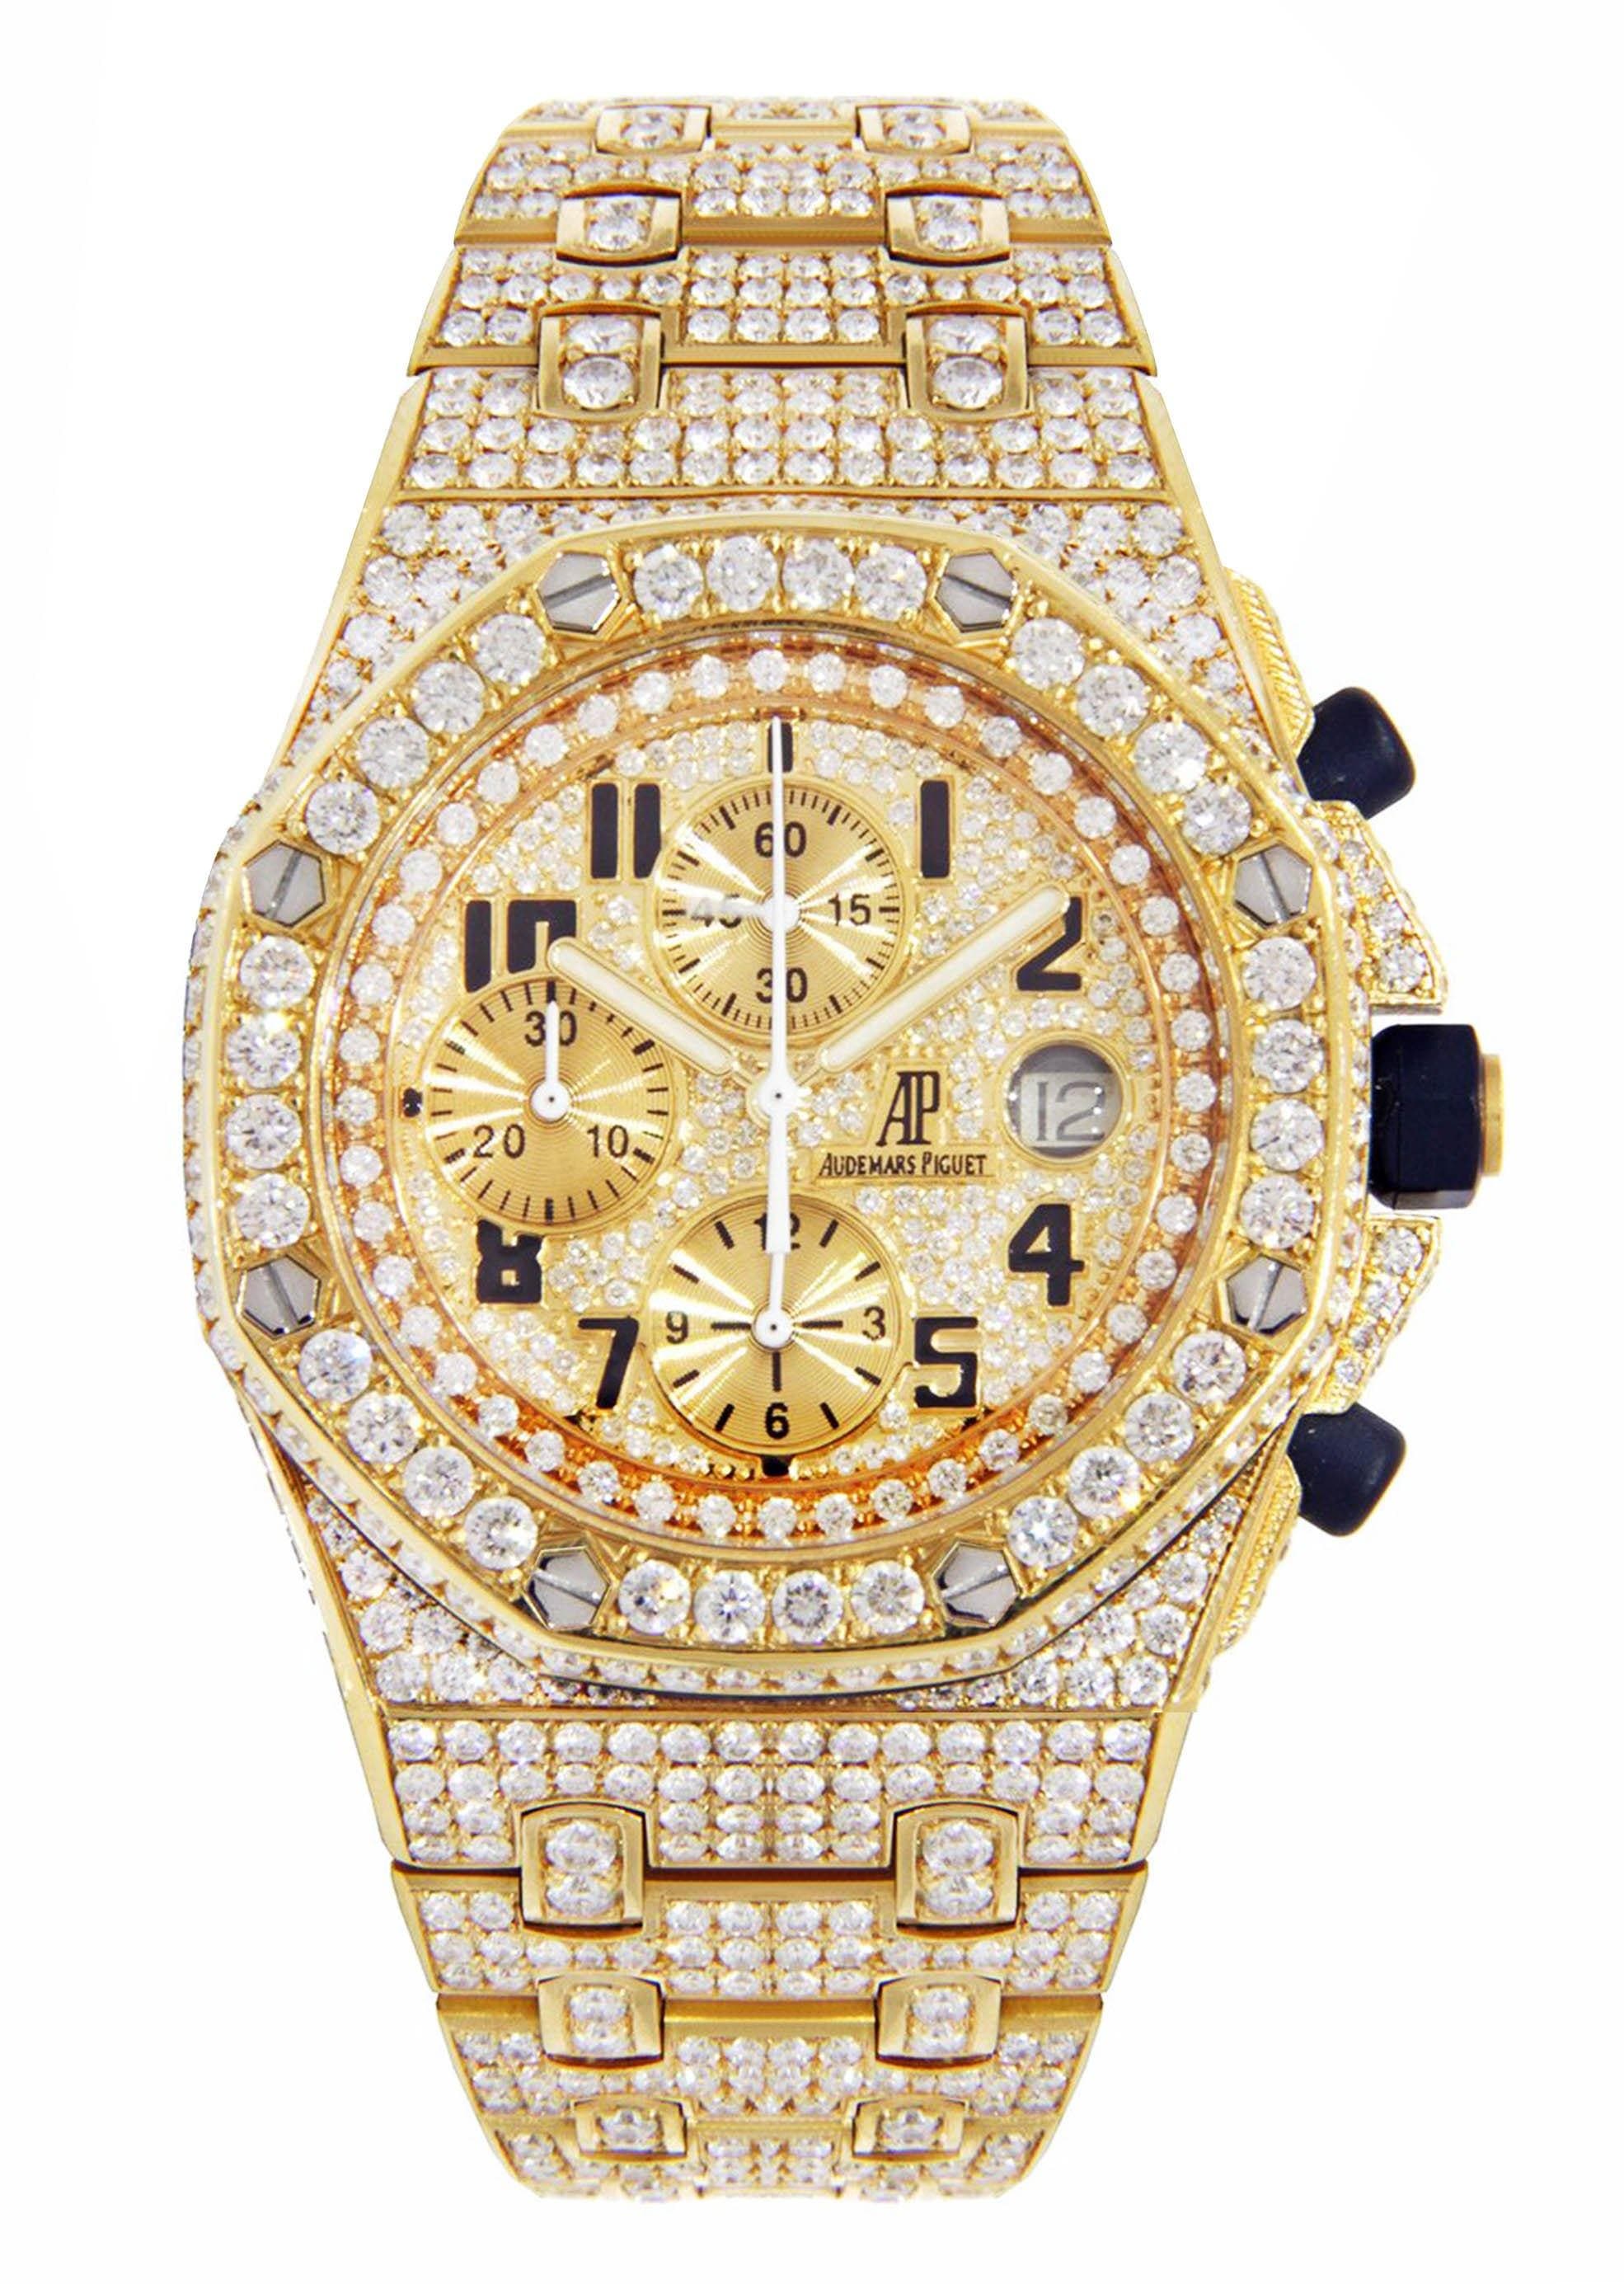 Audemars Piguet Royal Oak 26 ct Diamond Watch 18k Rose Gold